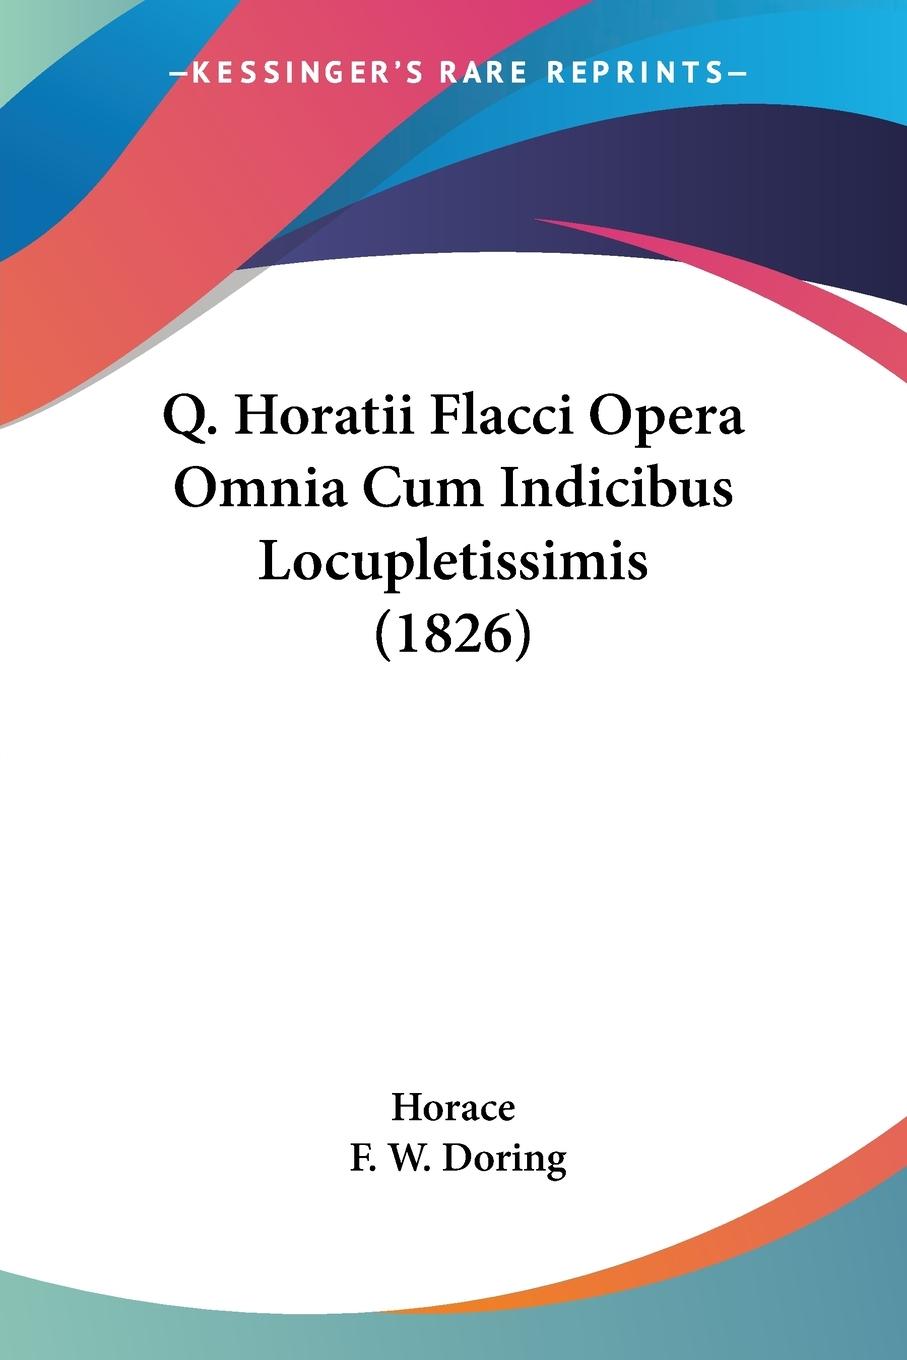 Q. Horatii Flacci Opera Omnia Cum Indicibus Locupletissimis (1826) - Horace Doring, F. W.